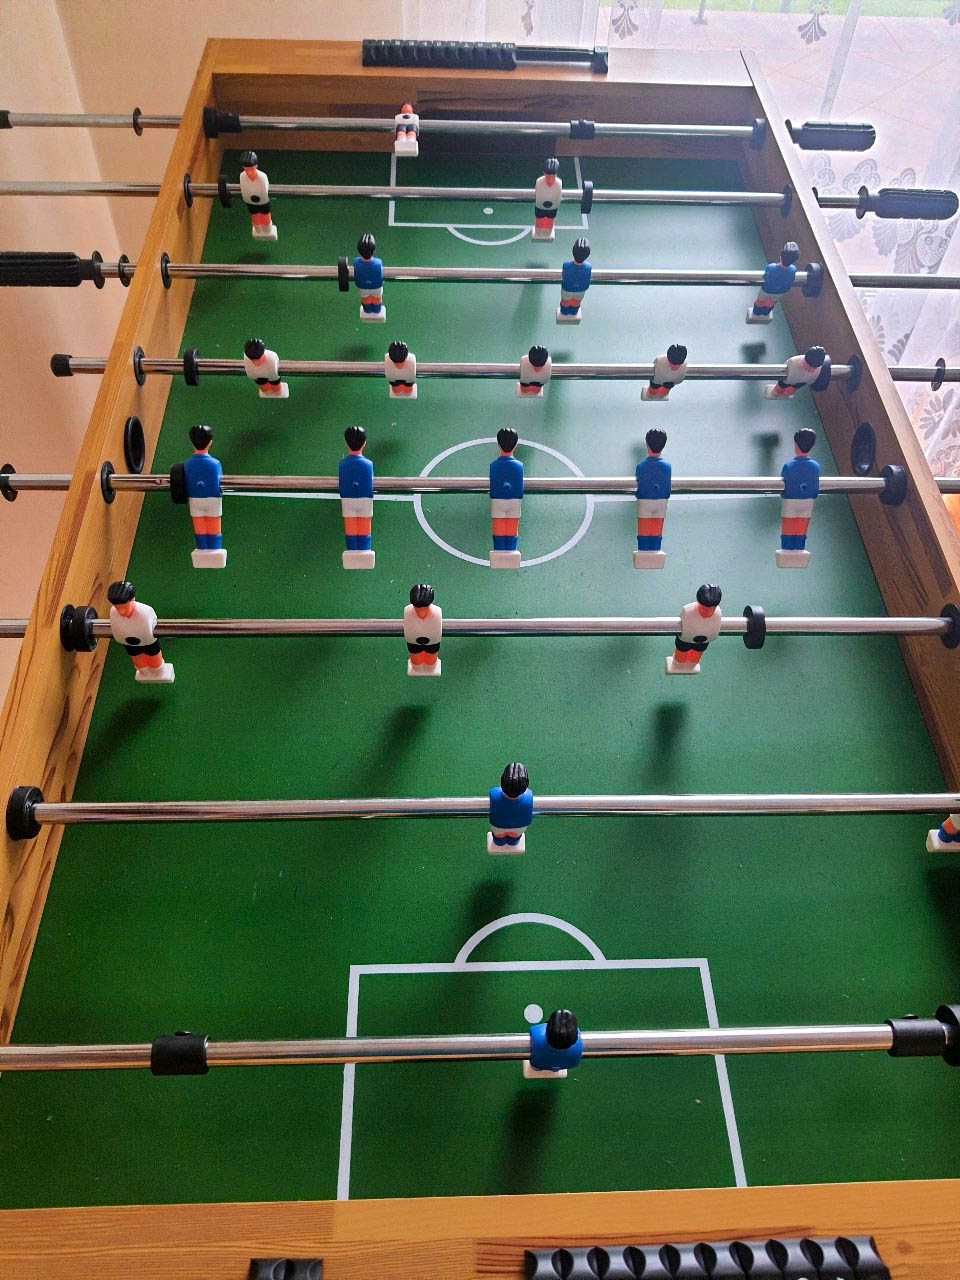 DREWNIANY STÓŁ DO PIŁKARZYKÓW duży stół do gry w piłkarzyki